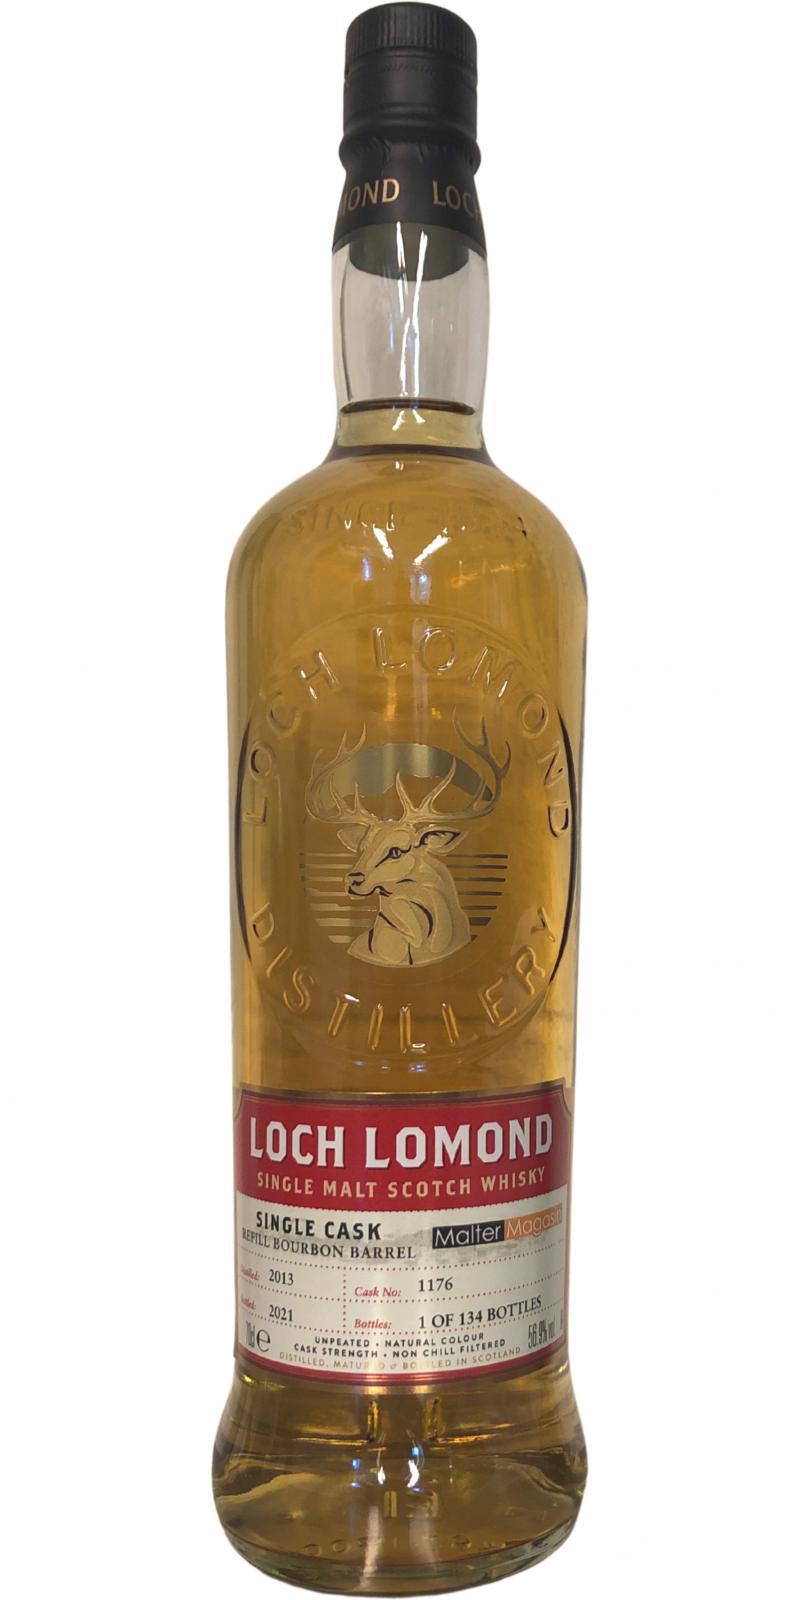 Loch Lomond 2013 Single Cask Refill Bourbon Barrel #1176 Malter Magasin Henric Madsen 56.9% 700ml